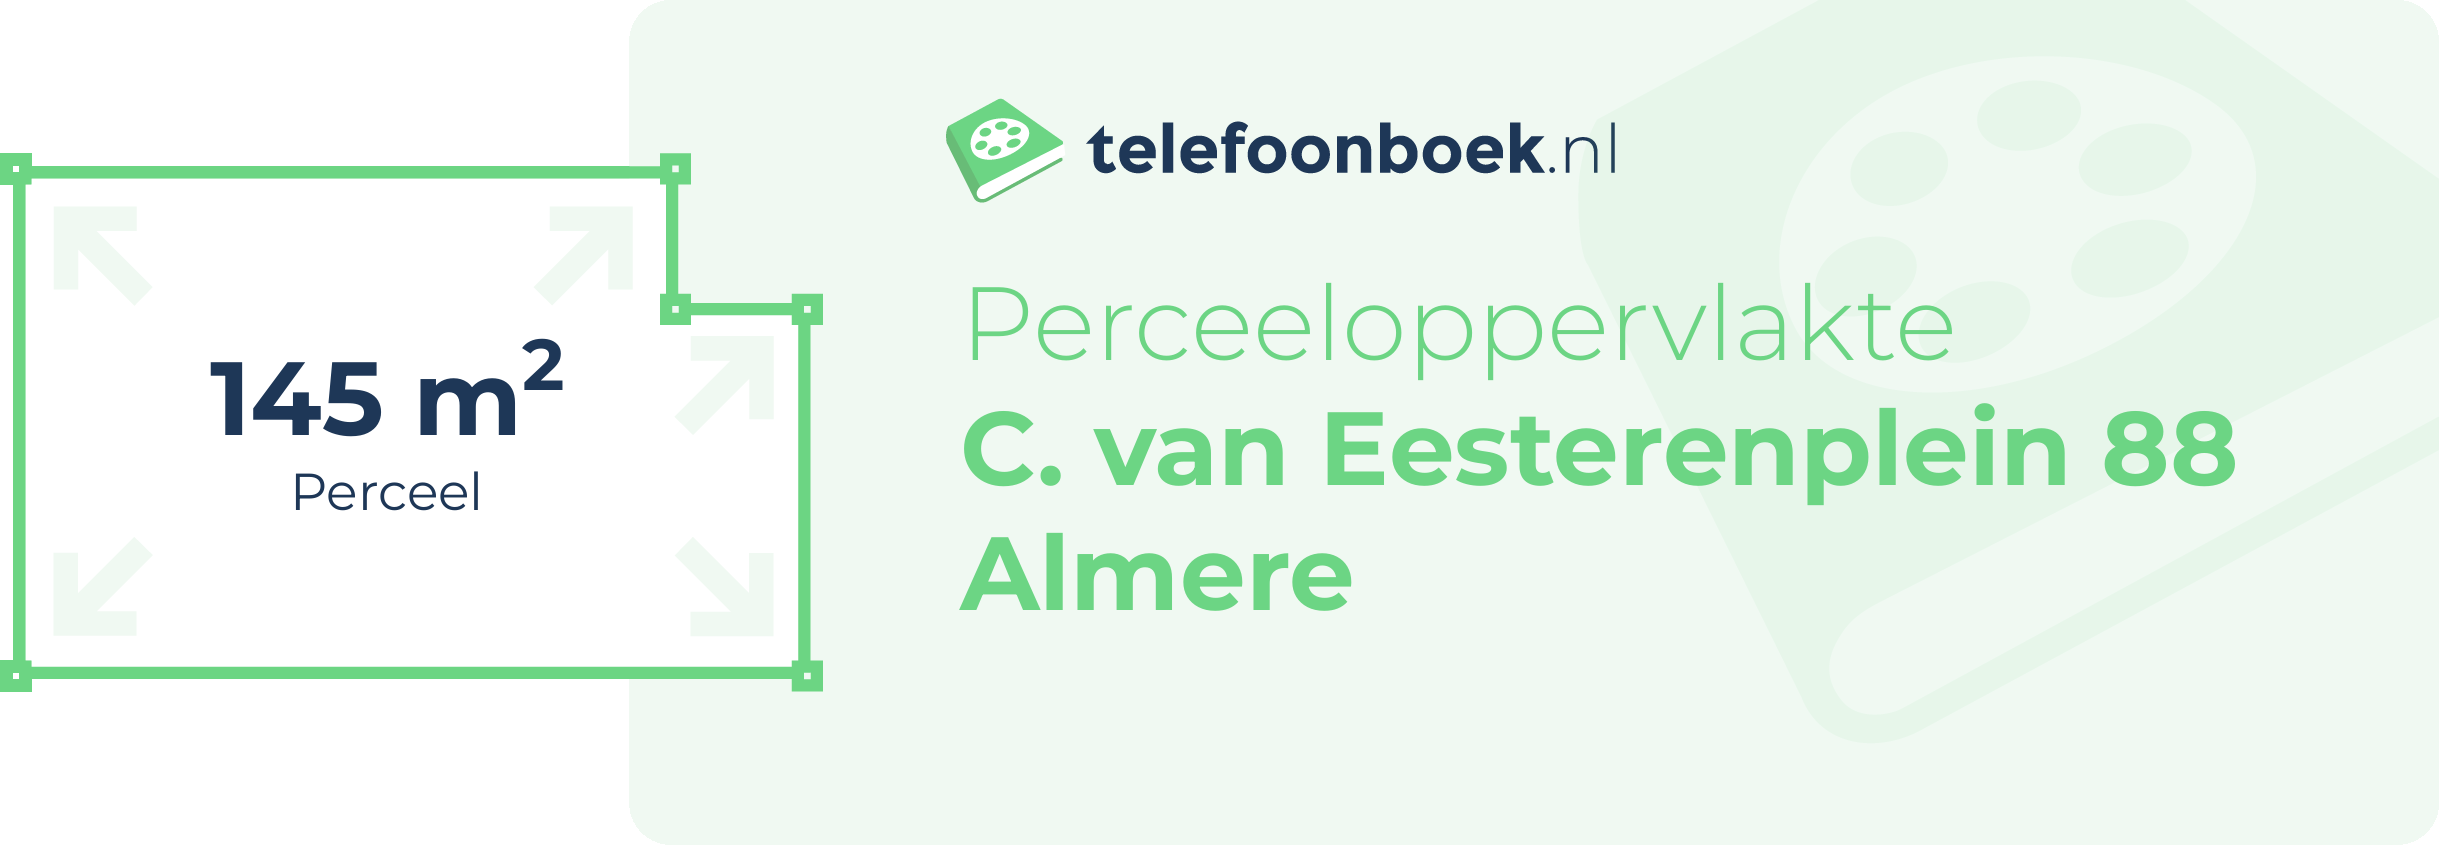 Perceeloppervlakte C. Van Eesterenplein 88 Almere